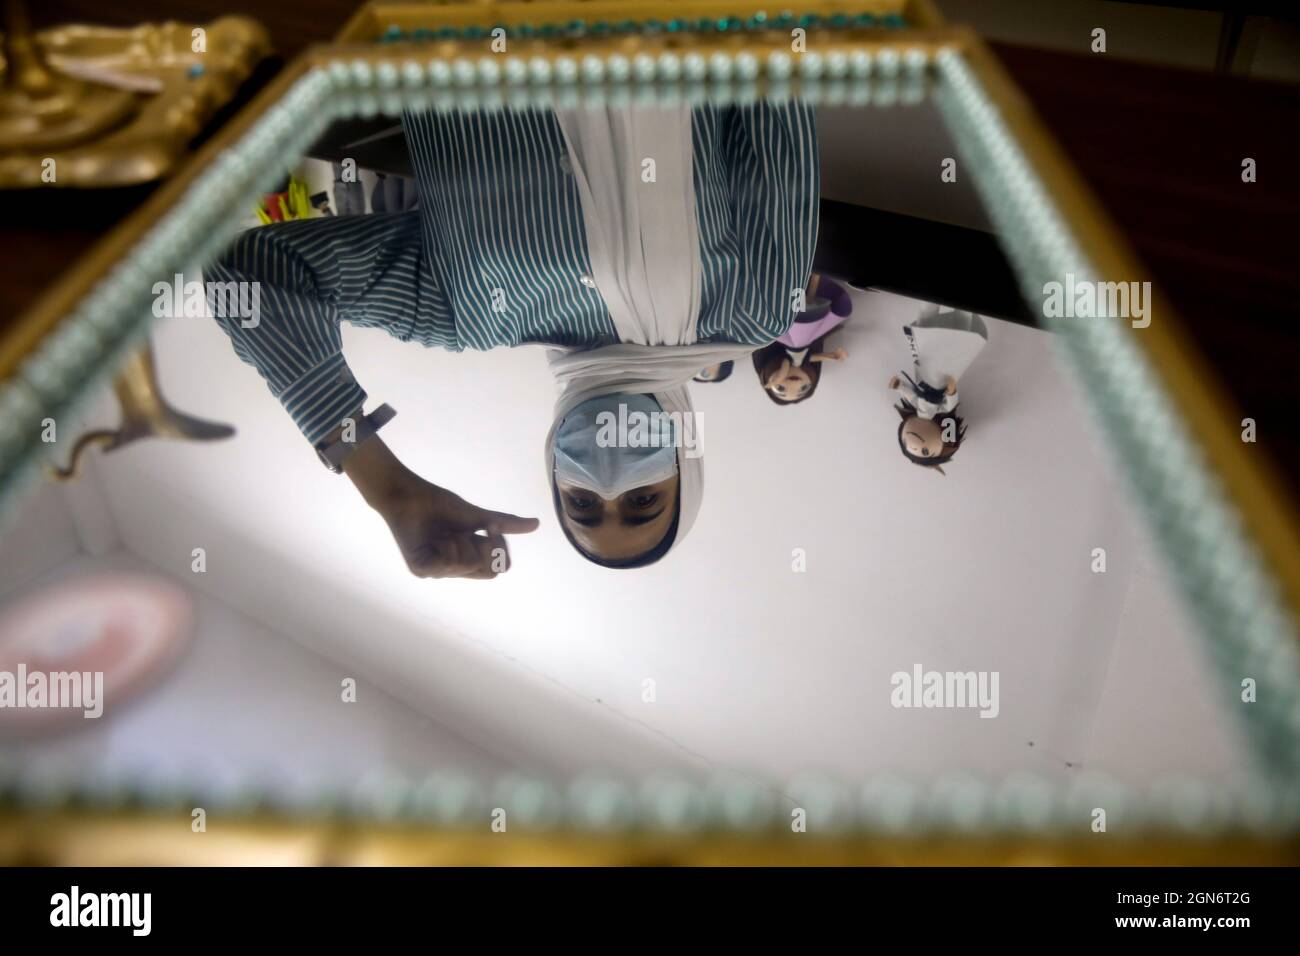 Un estudiante palestino sordo se refleja en un espejo reciclado durante una clase de artesanía antes del Día Internacional de las Lenguas de Señas, en una escuela para sordos en Naplusa, en la Ribera Occidental ocupada por Israel el 22 de septiembre de 2021. Foto tomada el 22 de septiembre de 2021. REUTERS/Raneen Sawafta Foto de stock